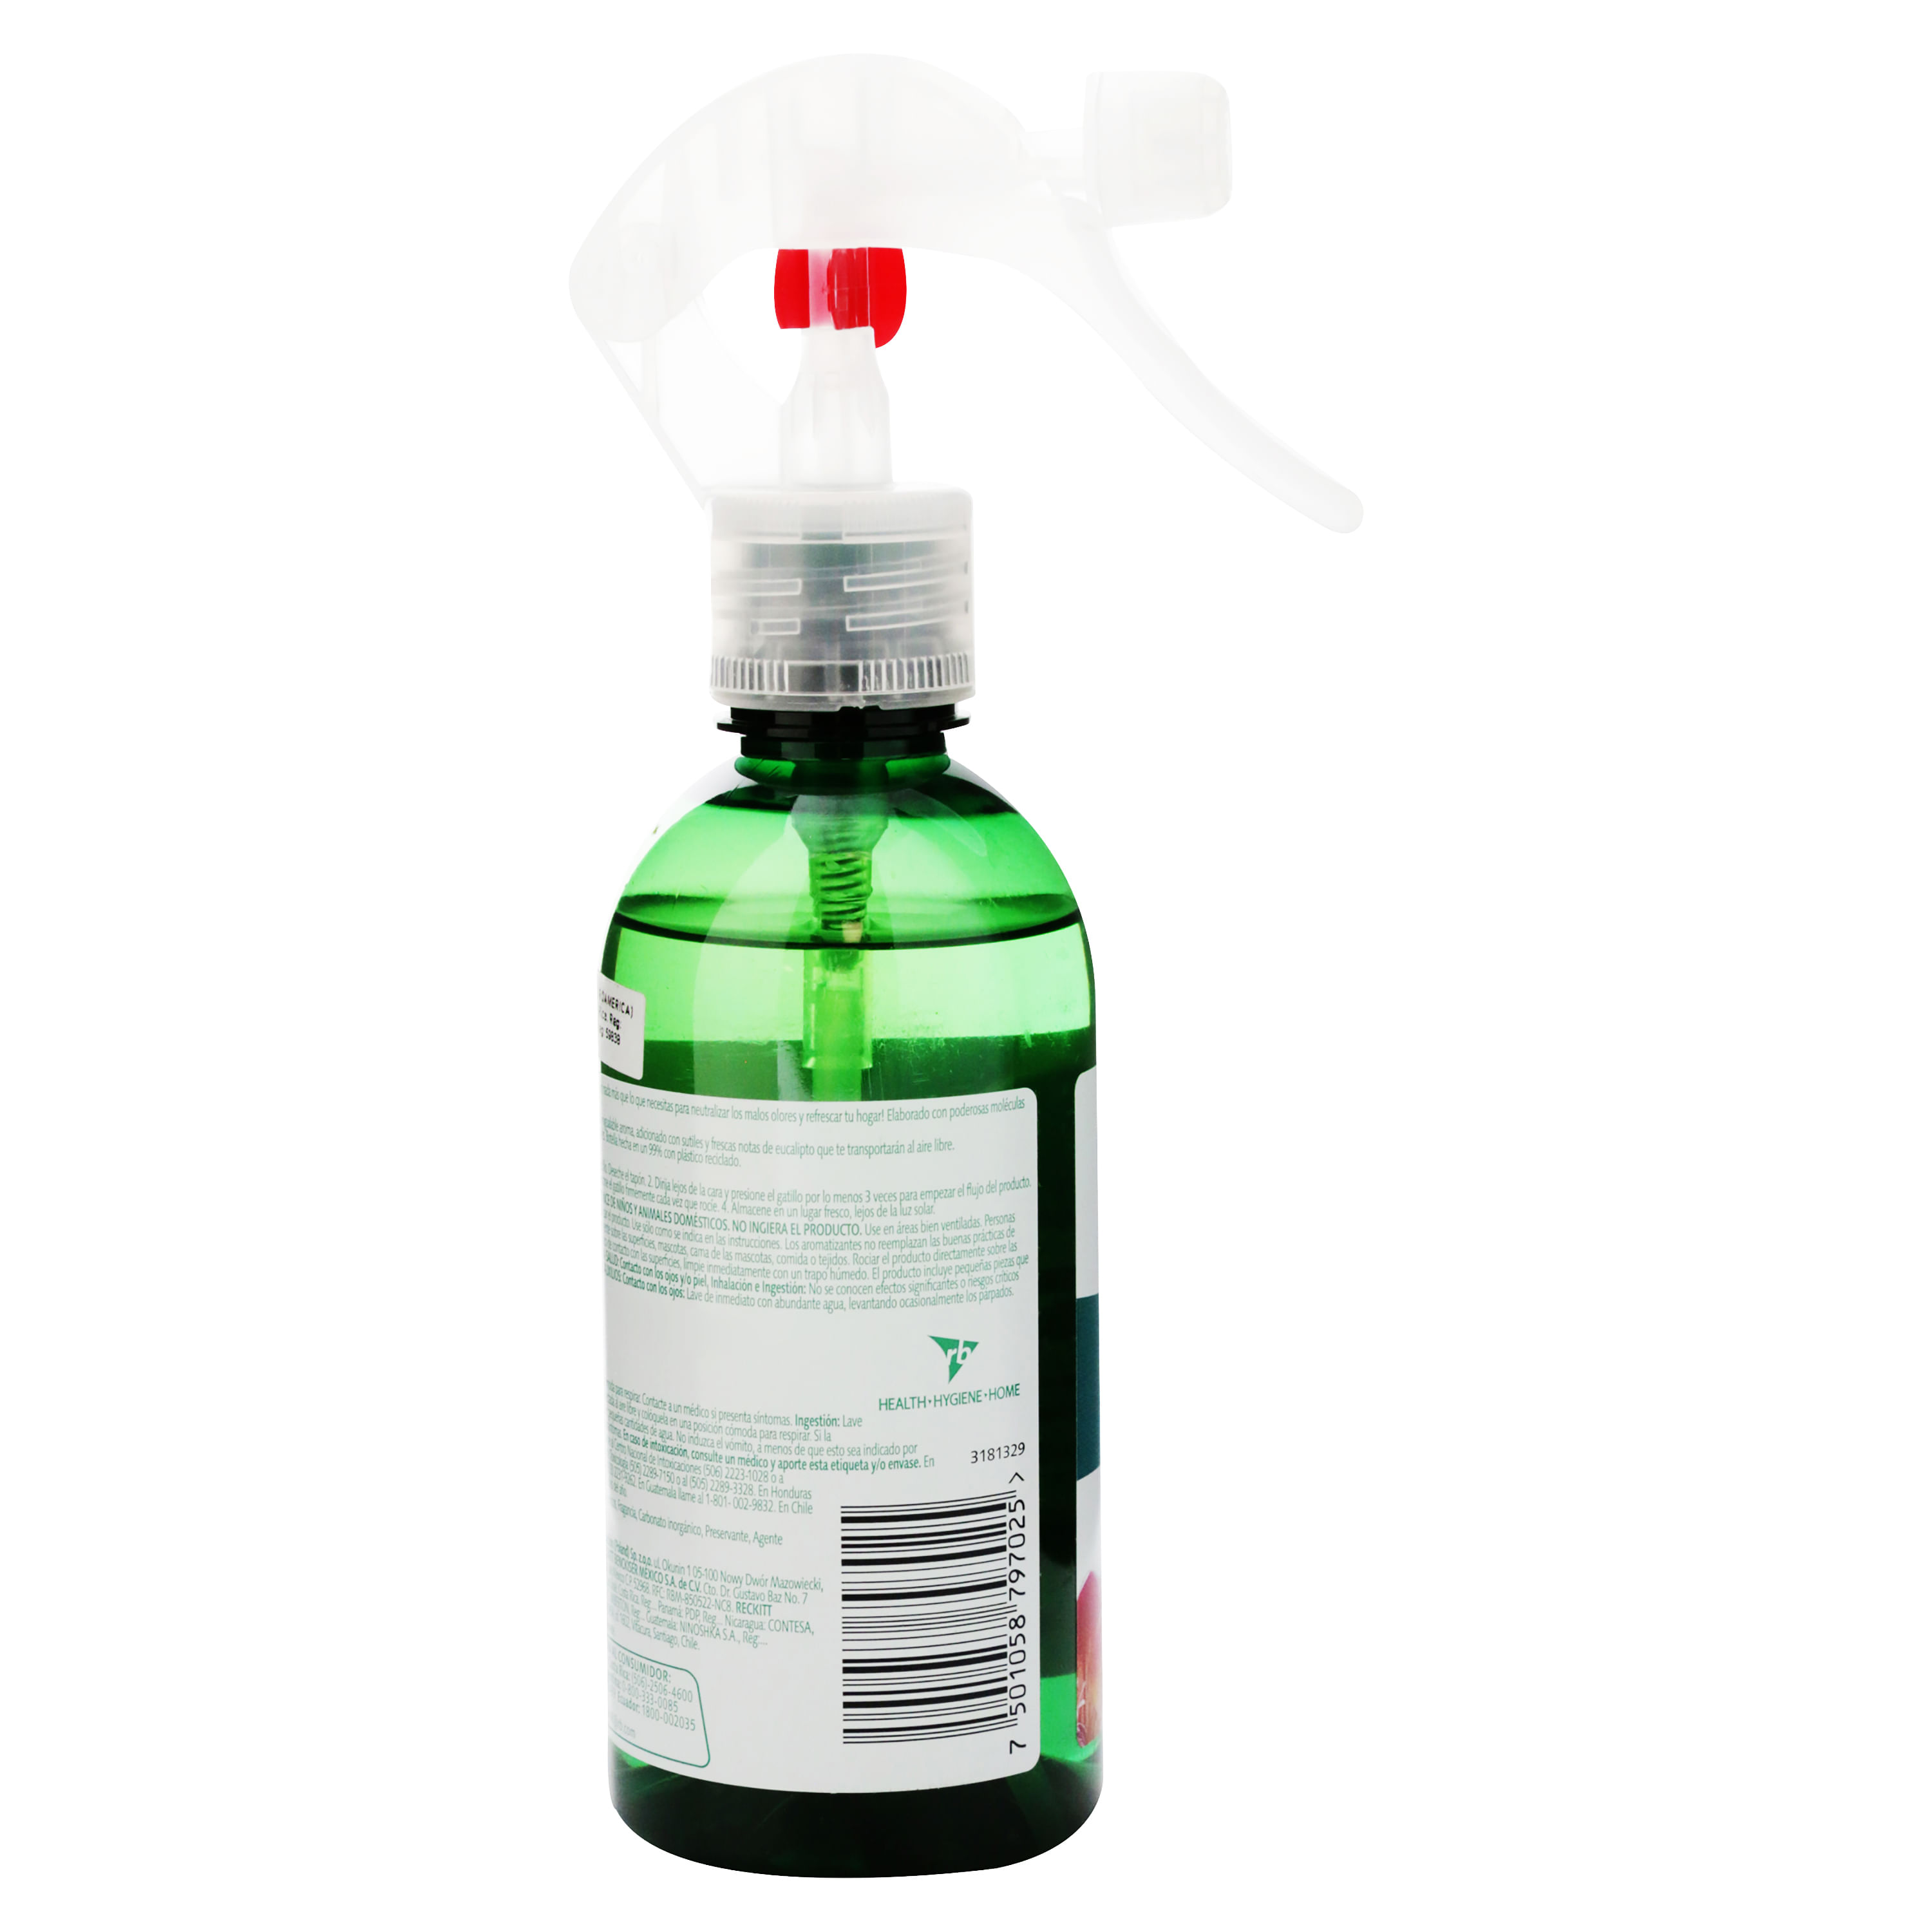 Spray limpiagafas de aromas - Farmaoptics